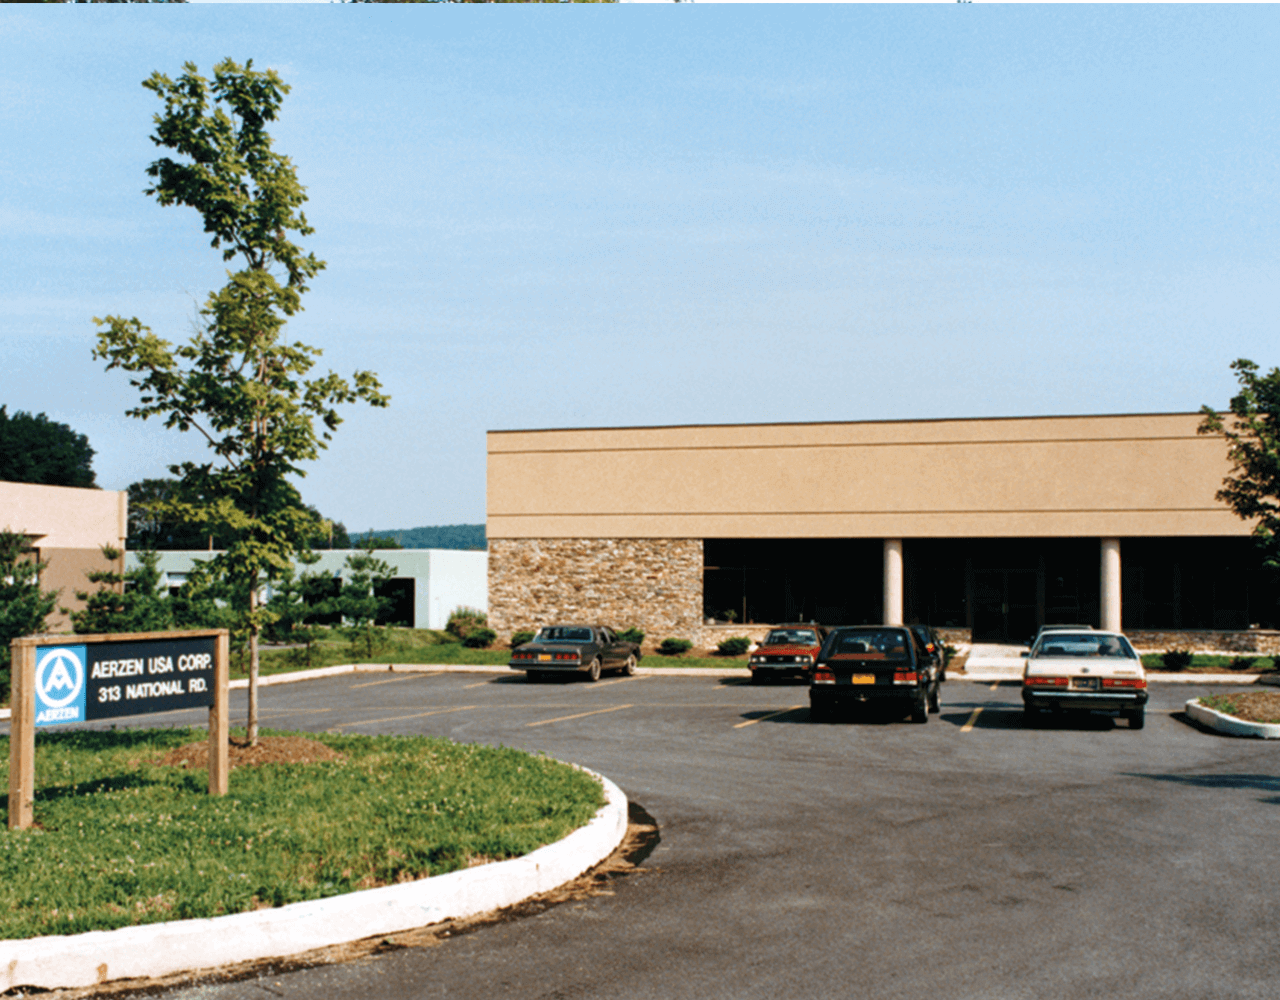 صورة لمبنى شركة Aerzen USA Corporation التابعة